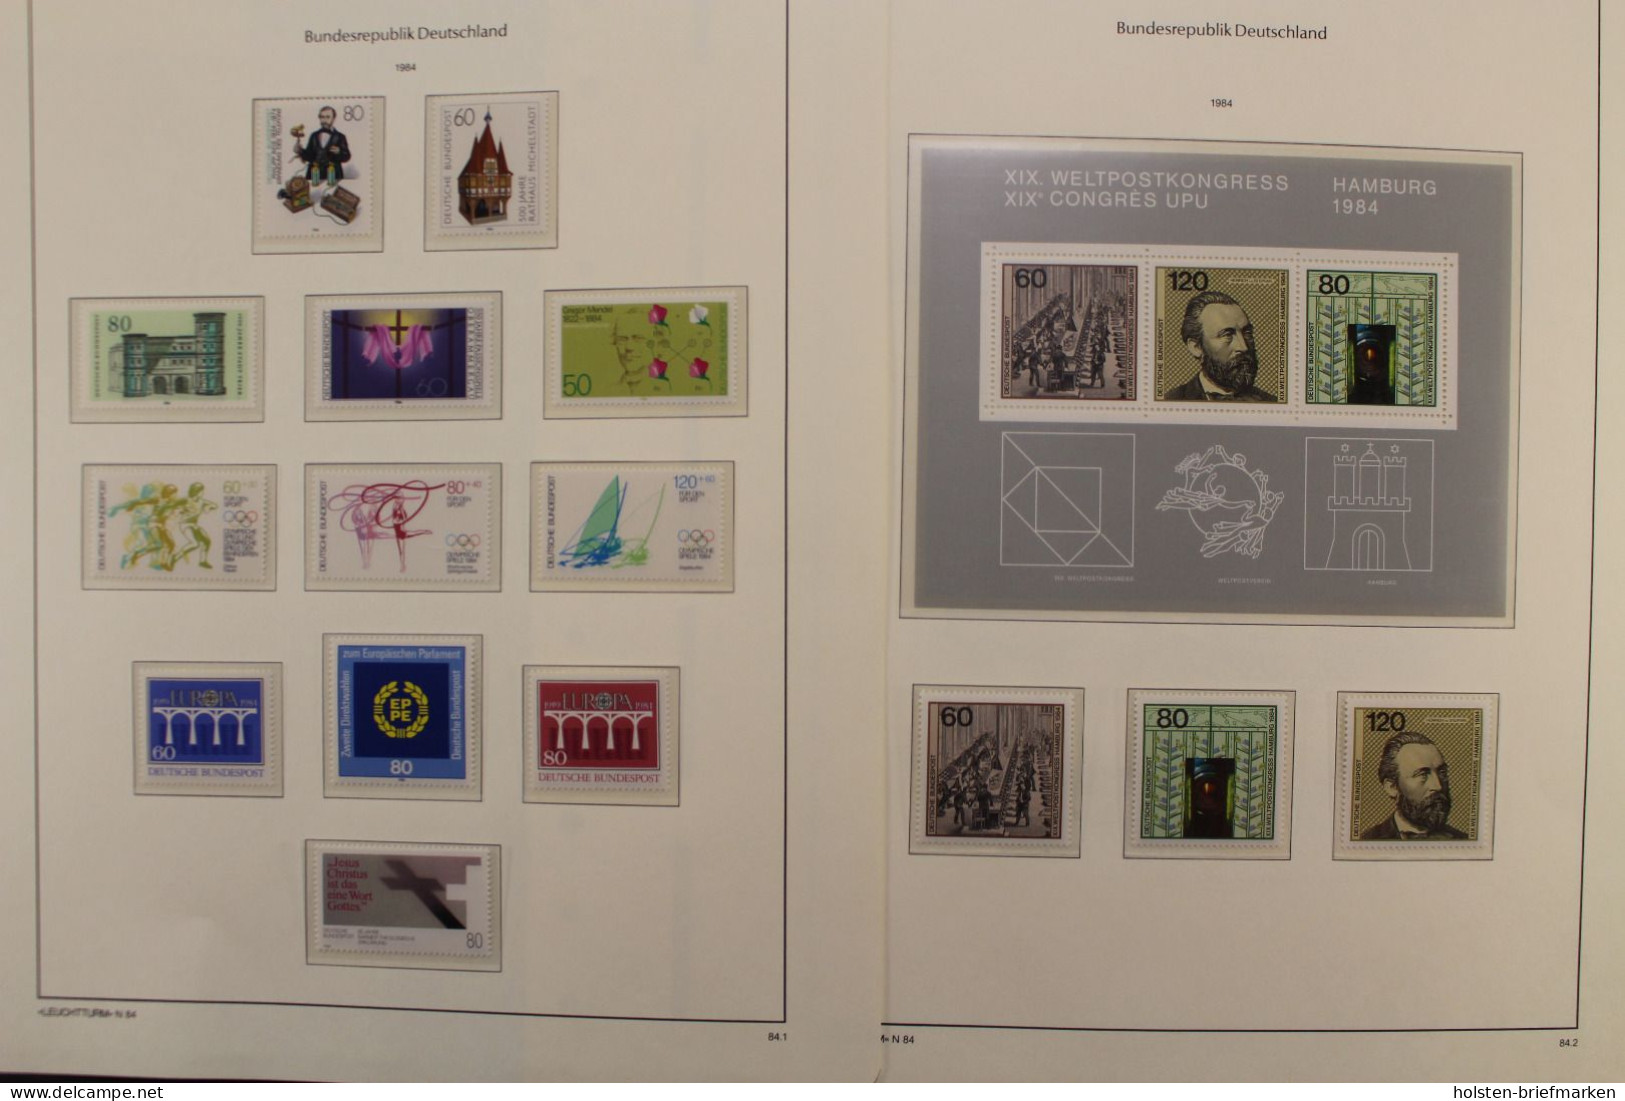 Deutschland (BRD) 1970-1990 postfrische Sammlung, viele Besonderheiten